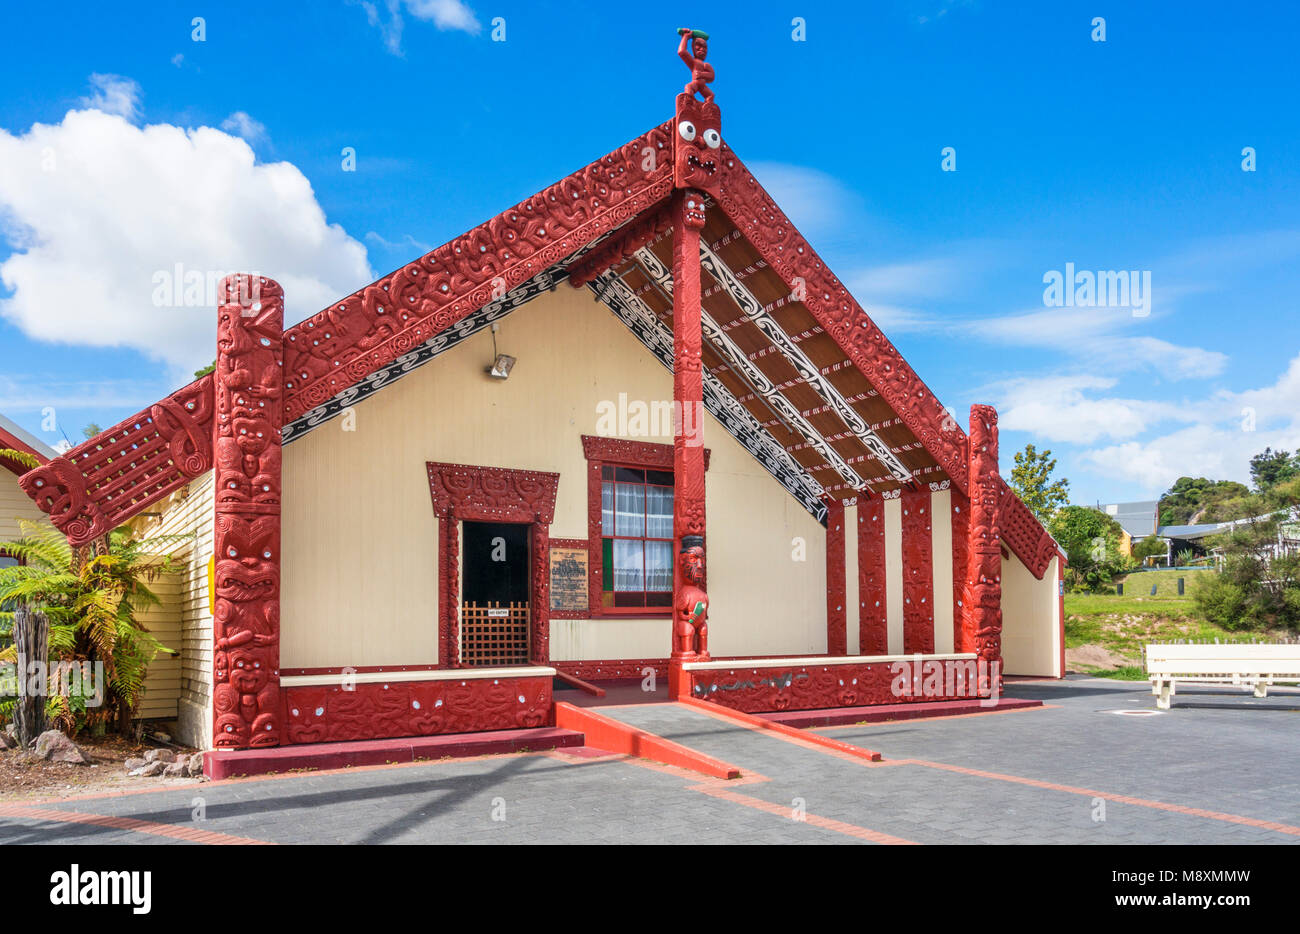 Nouvelle zélande Rotorua nouvelle zélande village thermal de Whakarewarewa rencontre wahaio house whare tipuna rotorua nouvelle zélande Ile du Nord Nouvelle Zélande Océanie Banque D'Images